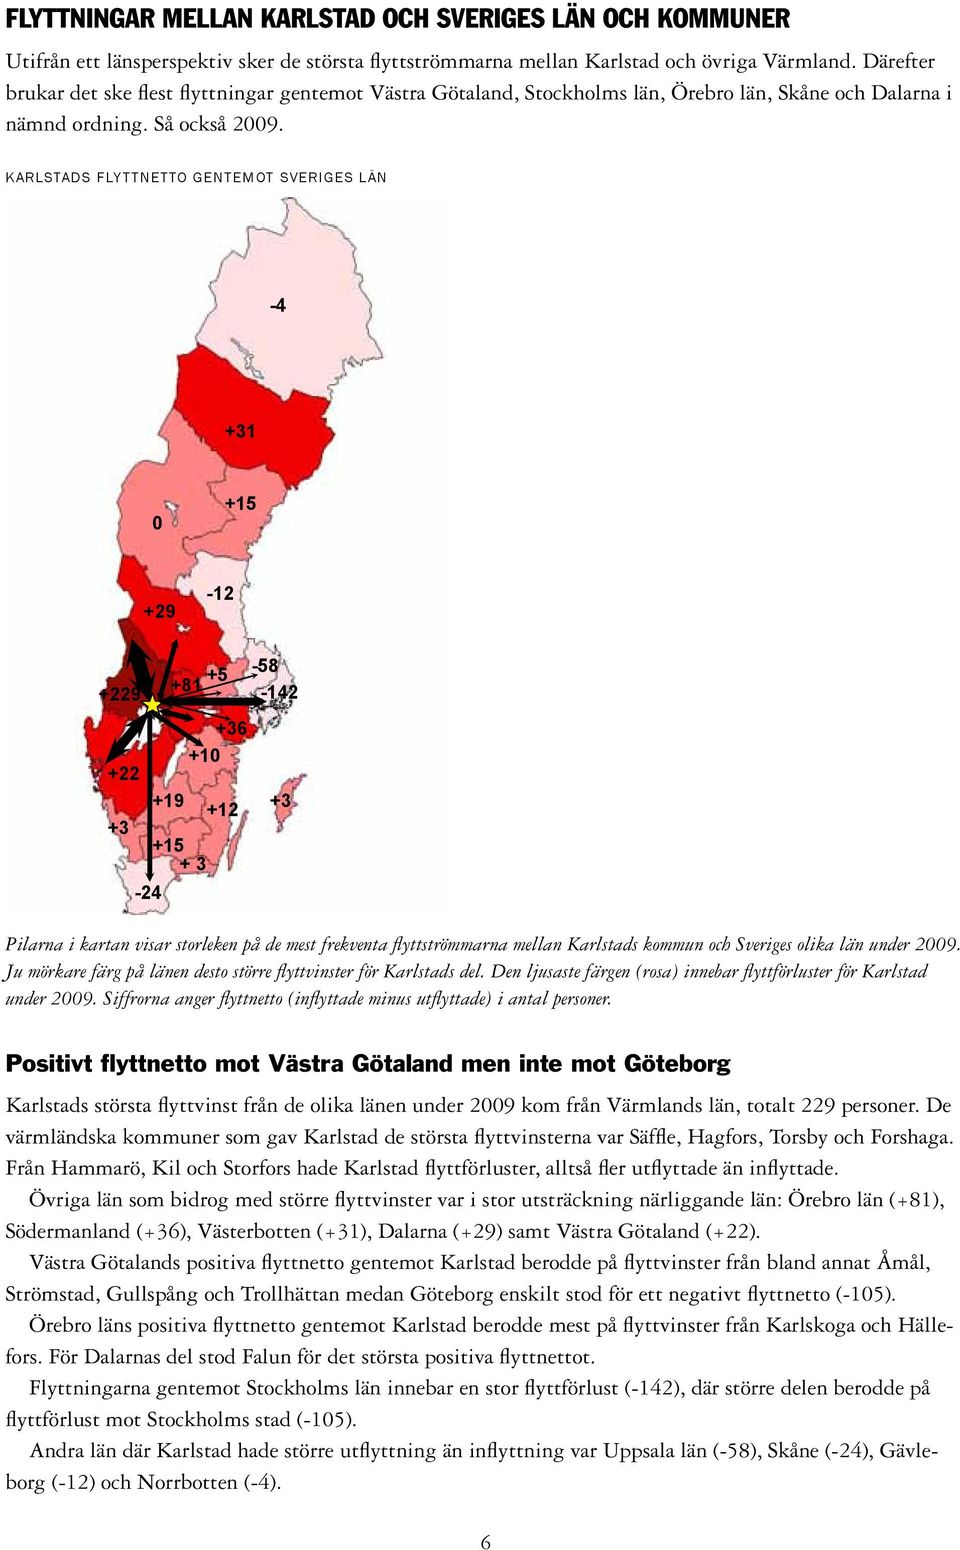 Karlstads Flyttnetto gentemot Sveriges län -4 +31 +15 +29-12 +229 +5 +81 +36 +1 +22 +19 +12 +3 +15 + 3-24 -58-142 +3 Pilarna i kartan visar storleken på de mest frekventa flyttströmmarna mellan